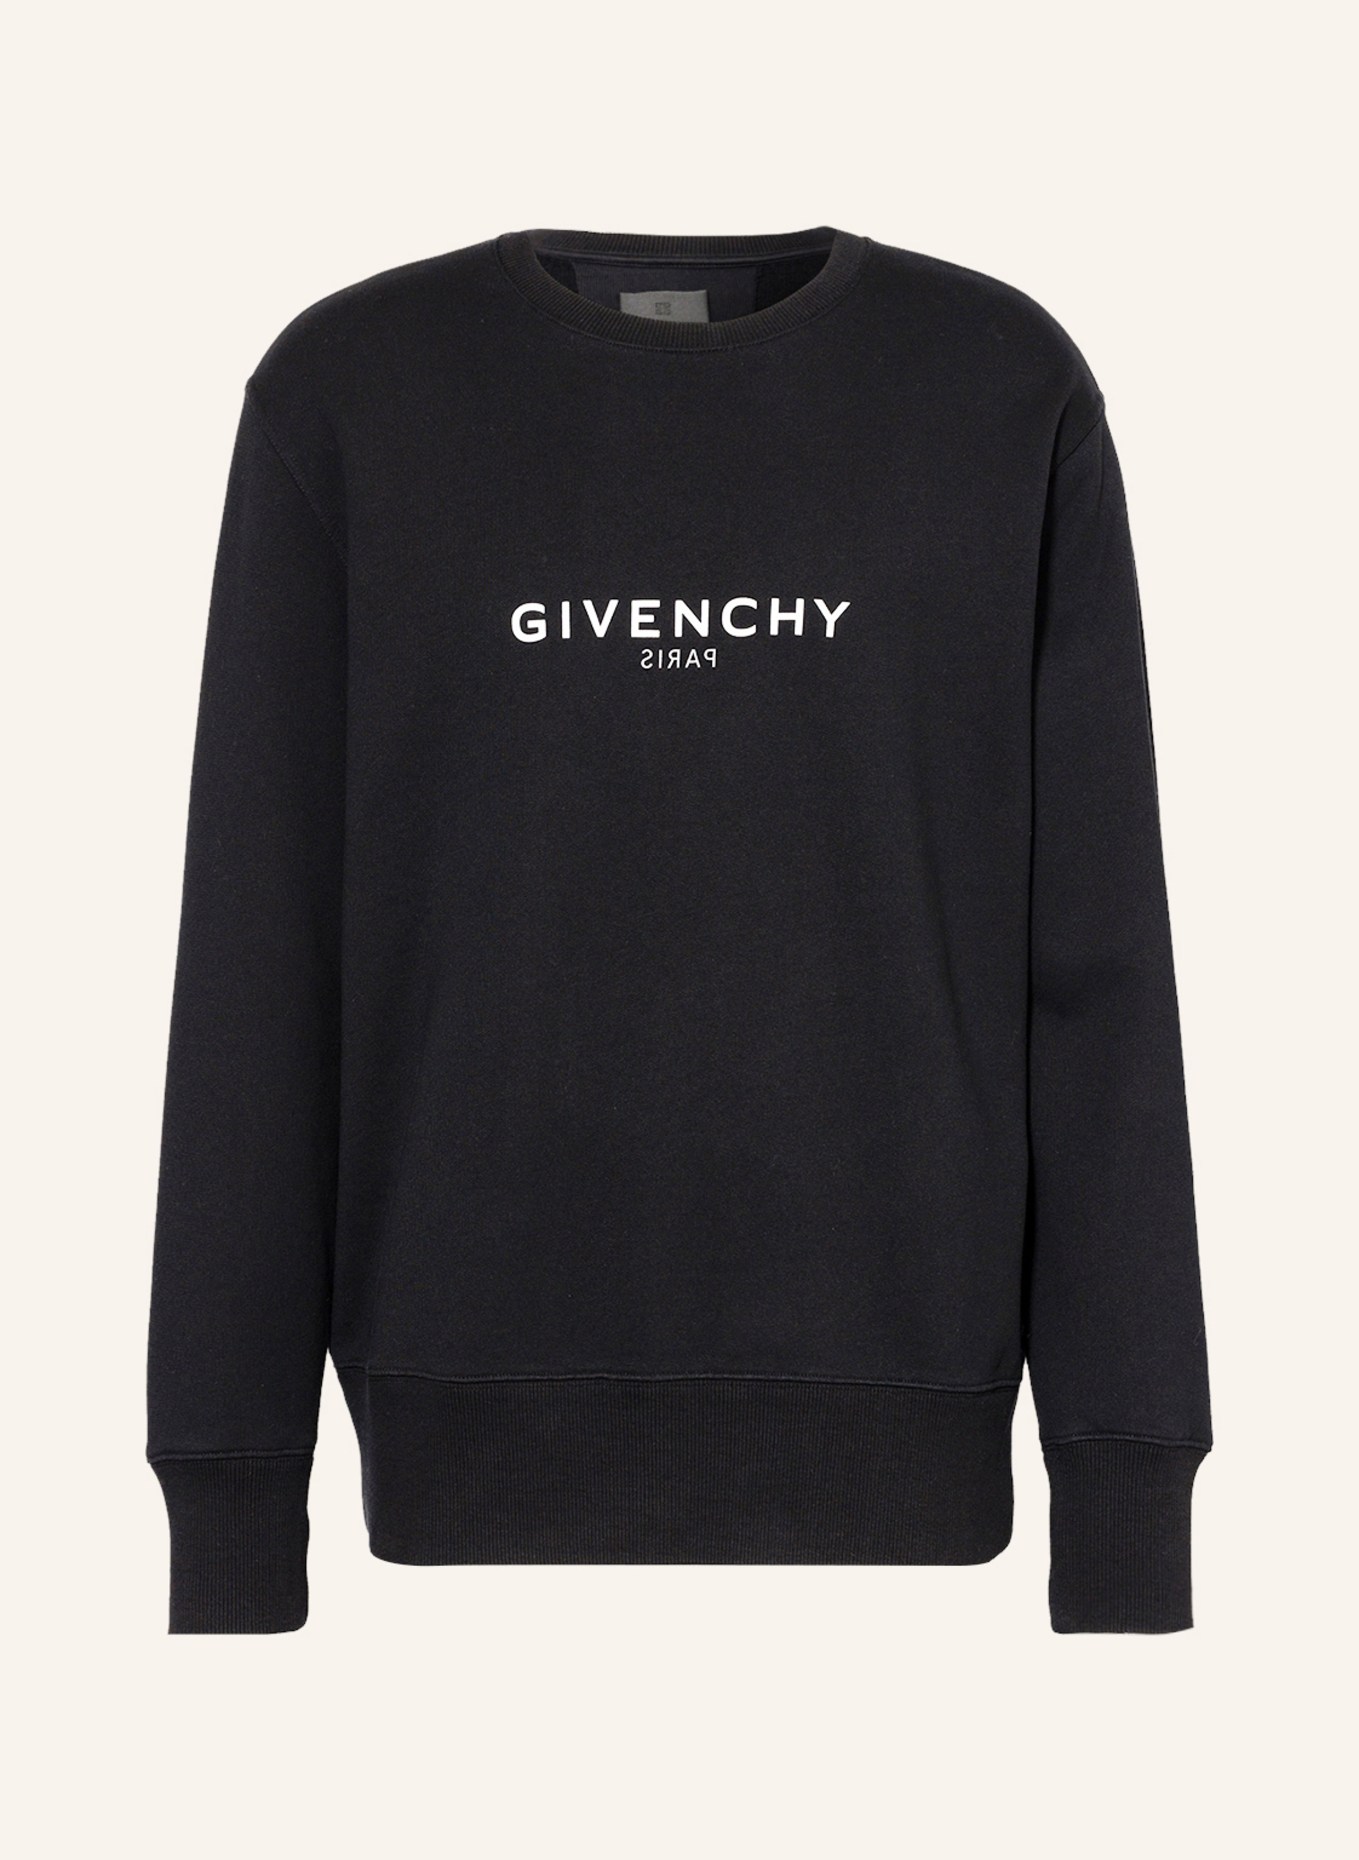 GIVENCHY Oversized sweatshirt, Color: BLACK (Image 1)